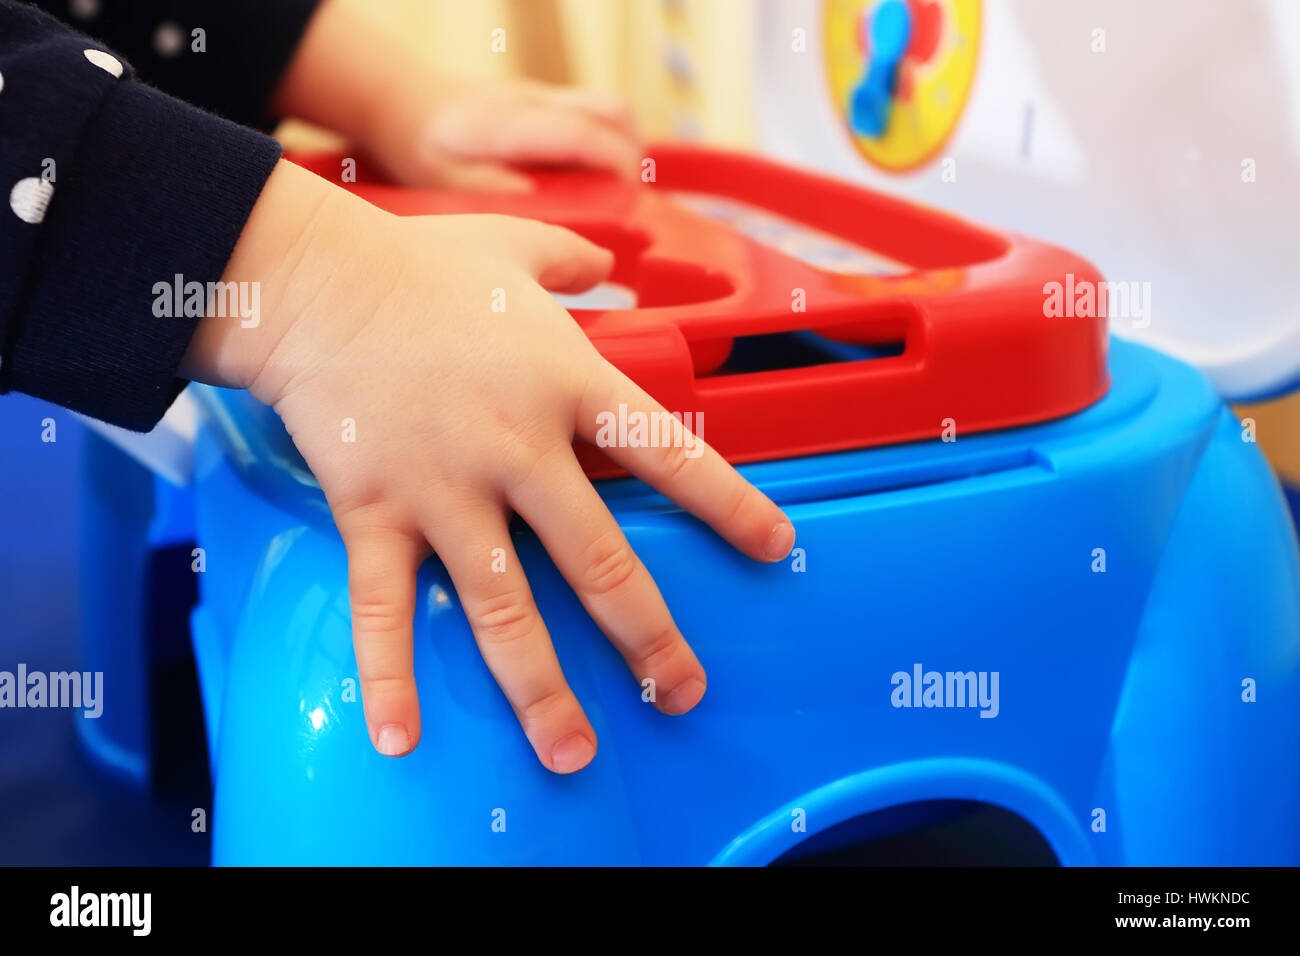 Les mains de l'enfant on colorful toy box close-up. Kid se replie les jouets dans la boîte bleue. Enfant lumineux arrière-plan. Banque D'Images